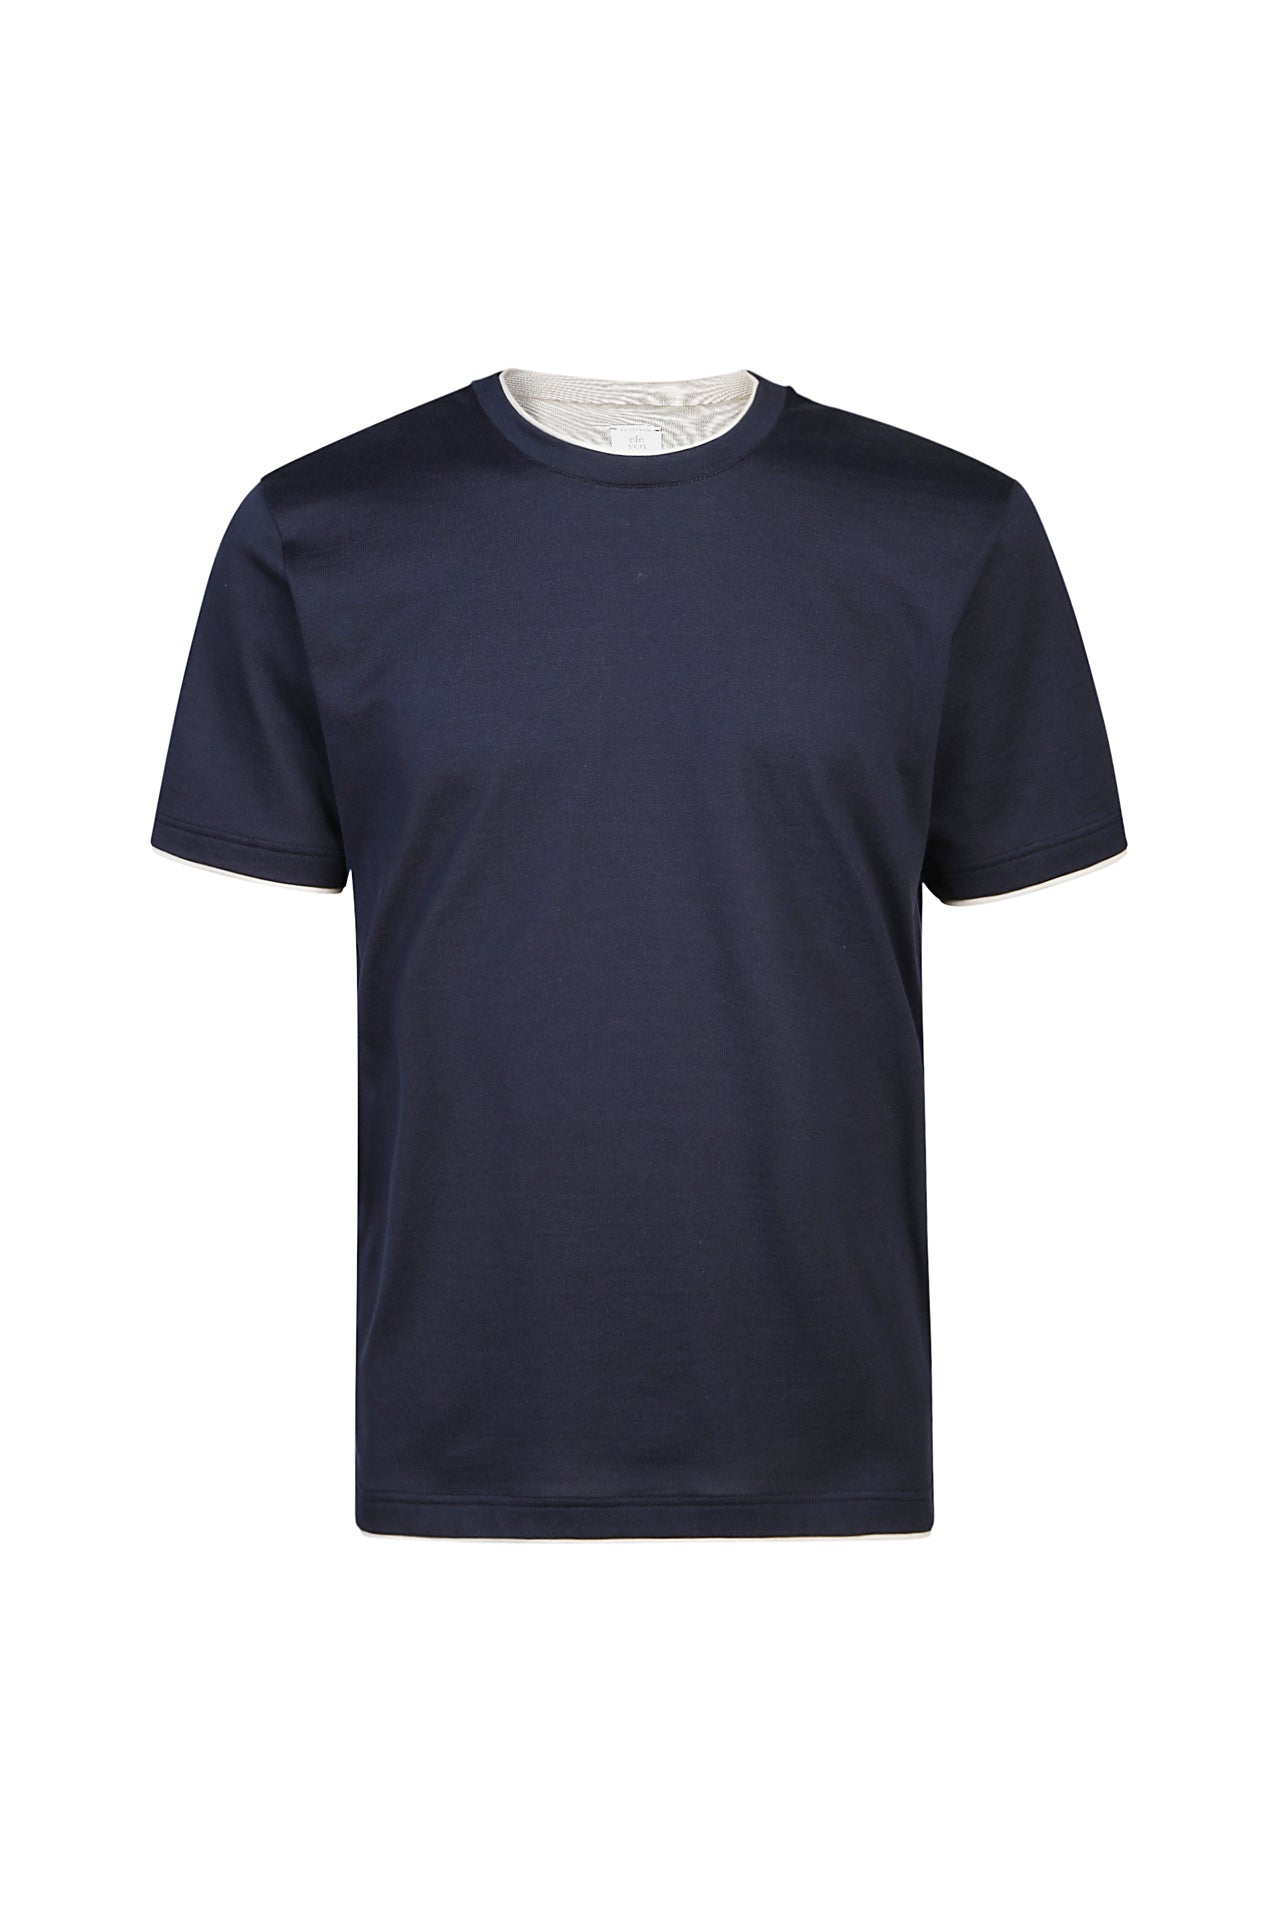 Eleventy T-Shirt Uomo Girocollo-Blu